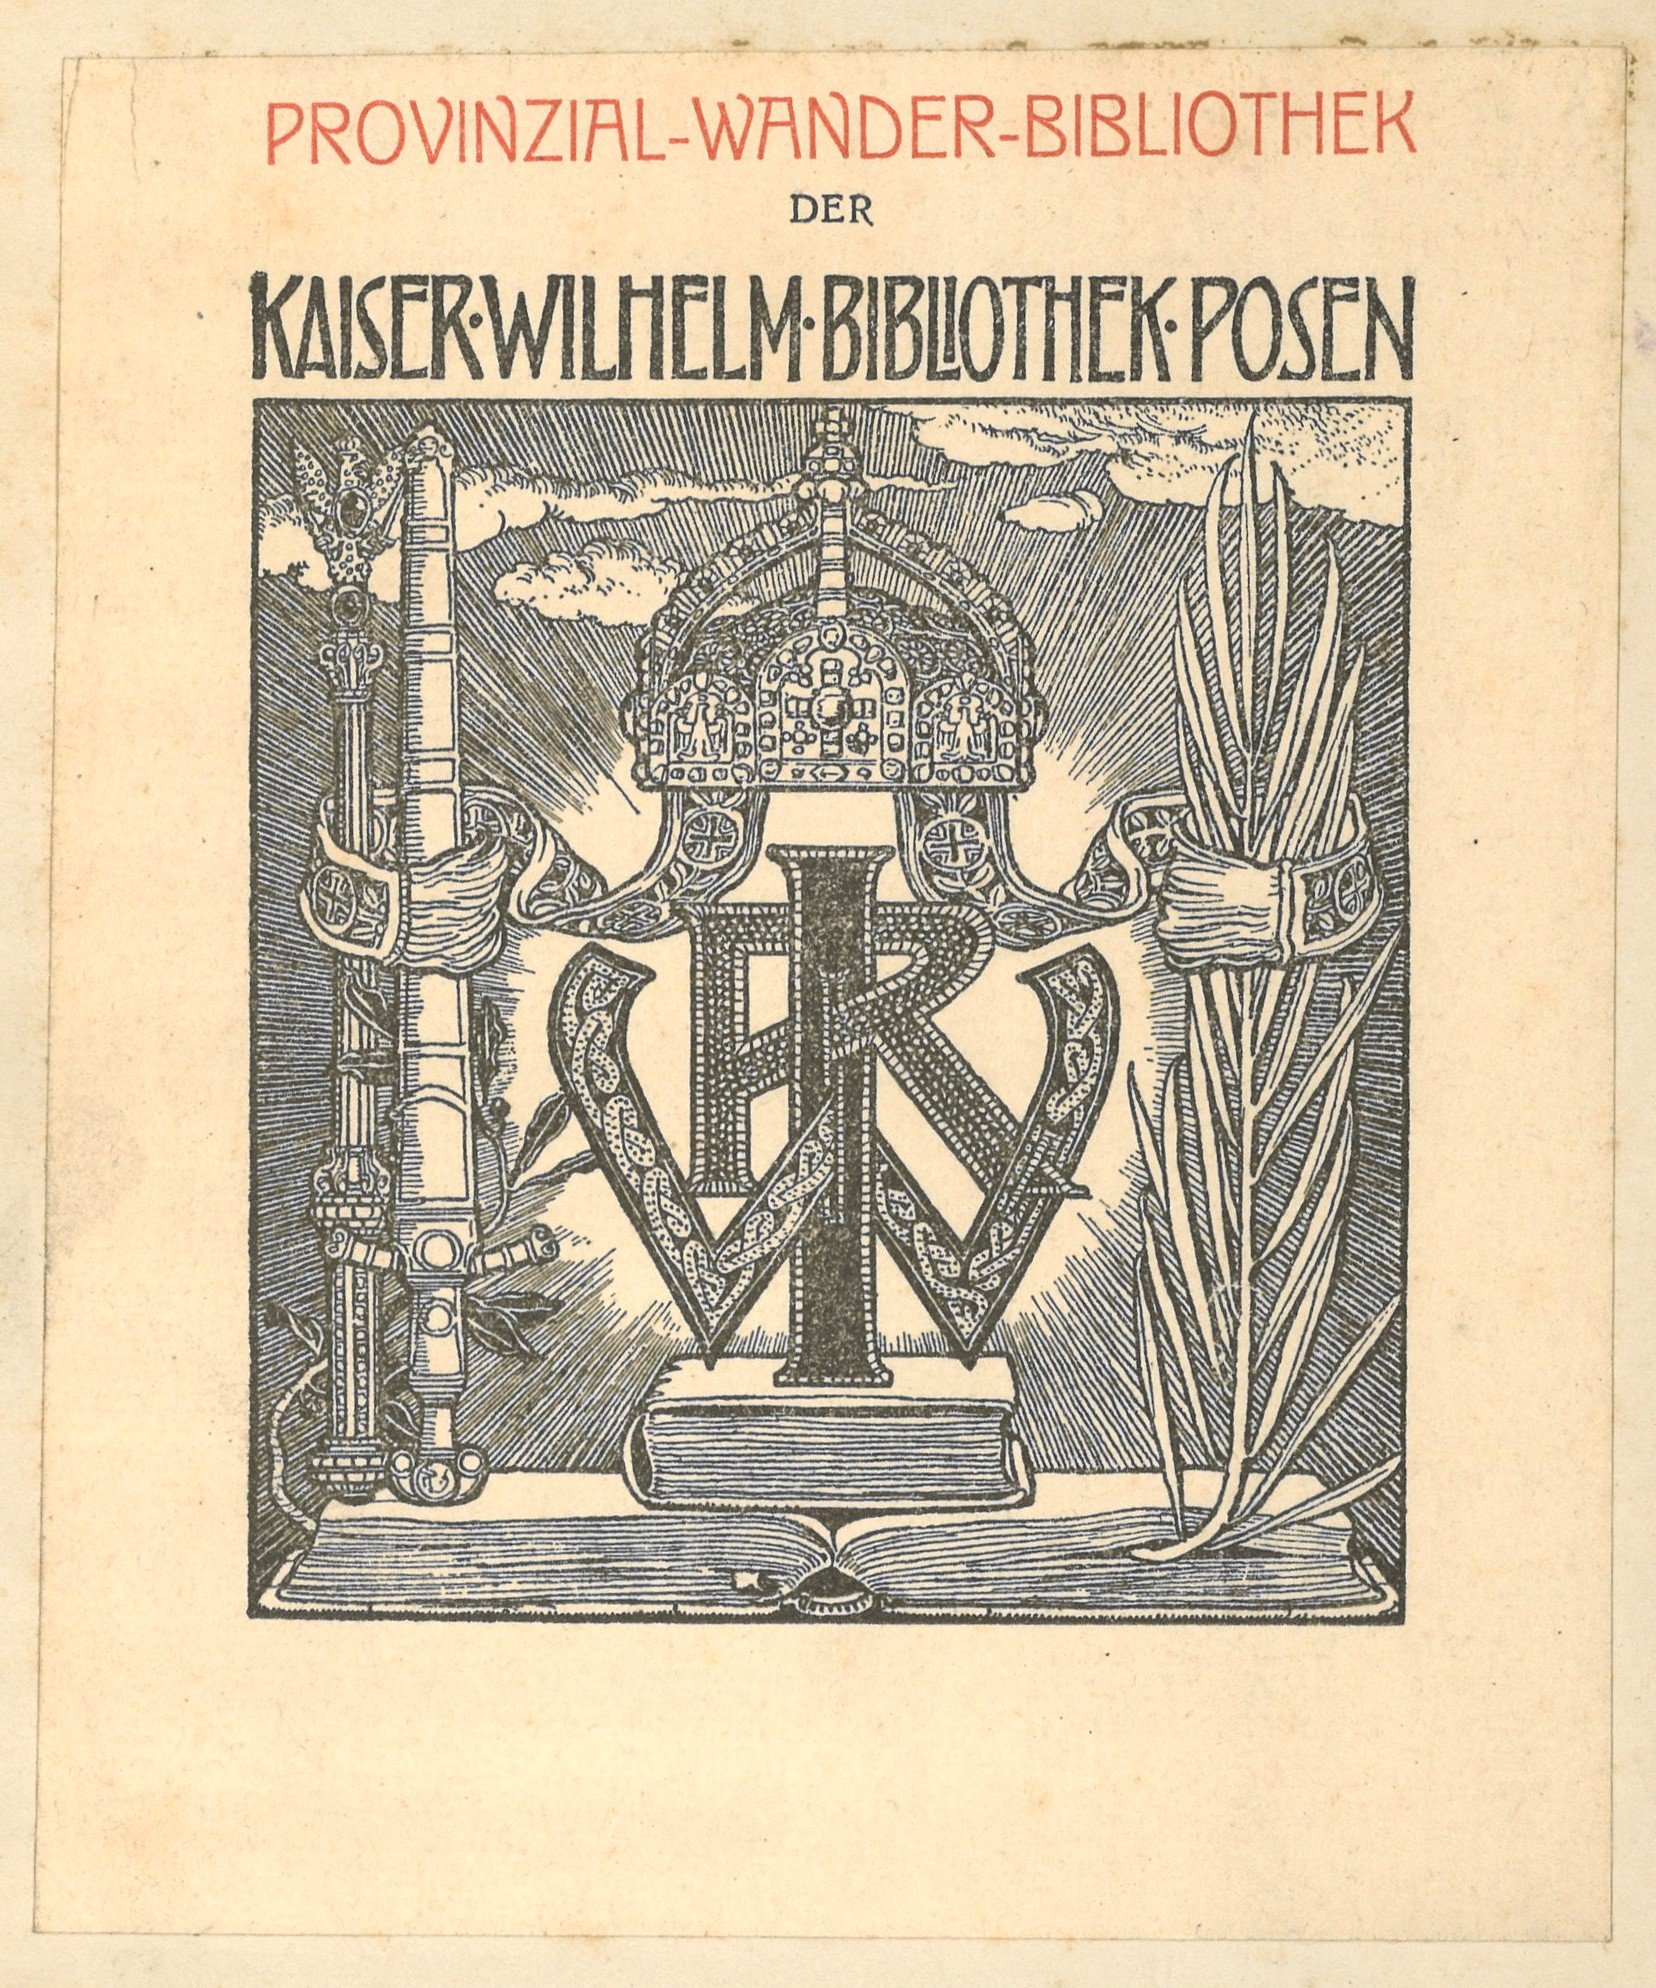 Exlibris der Provinzial-Wander-Bibliothek der Kaiser-Wilhelm-Bibliothek Posen (Landesgeschichtliche Vereinigung für die Mark Brandenburg e.V. CC BY)